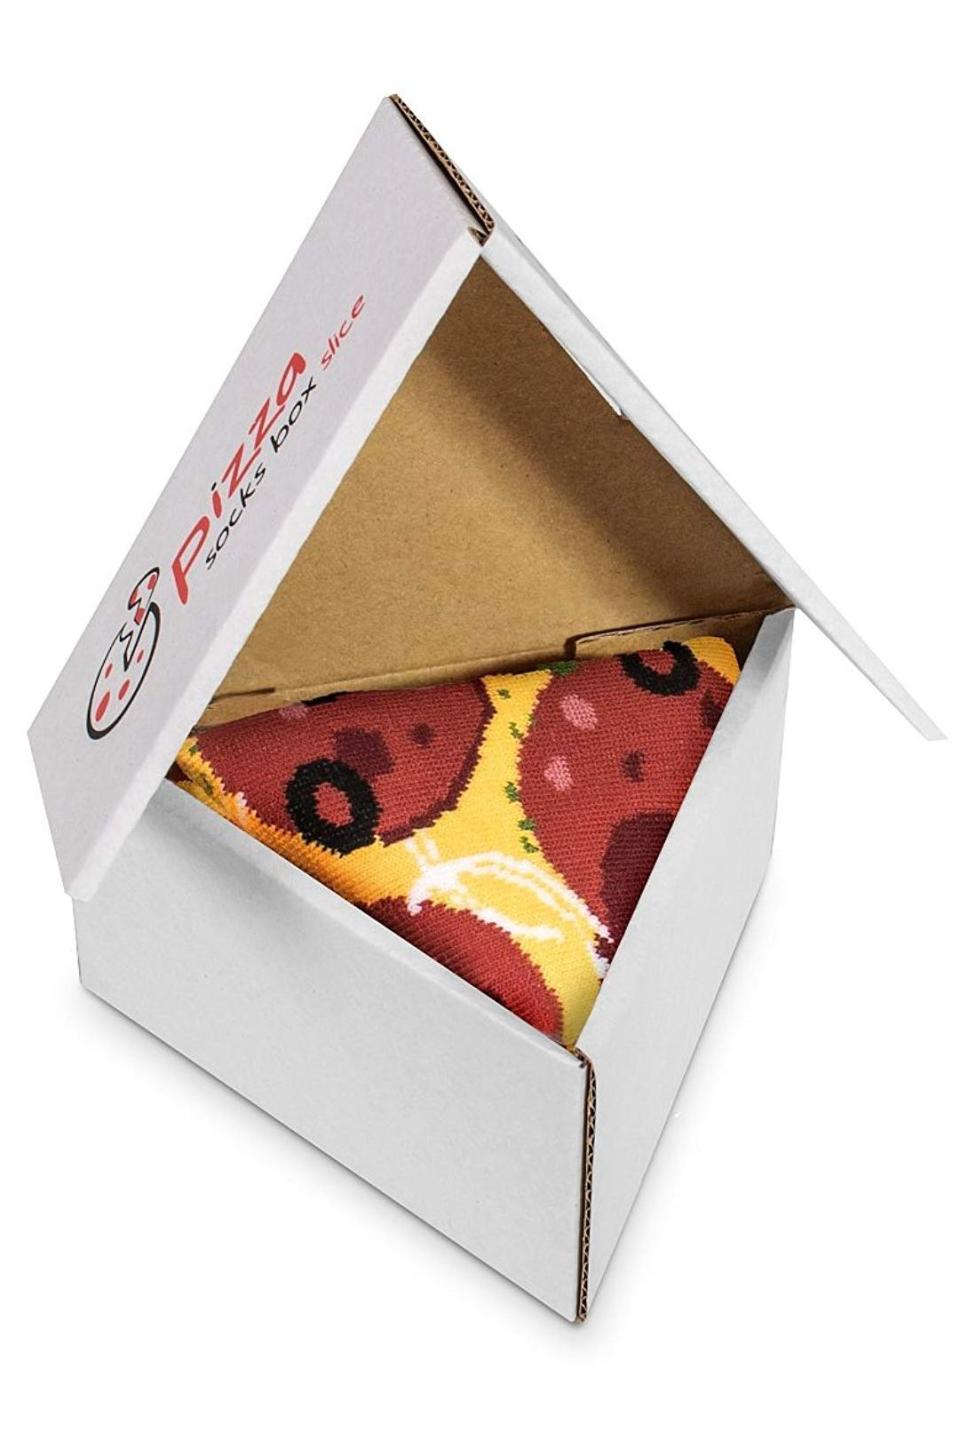 28) Pizza Slice Socks Box